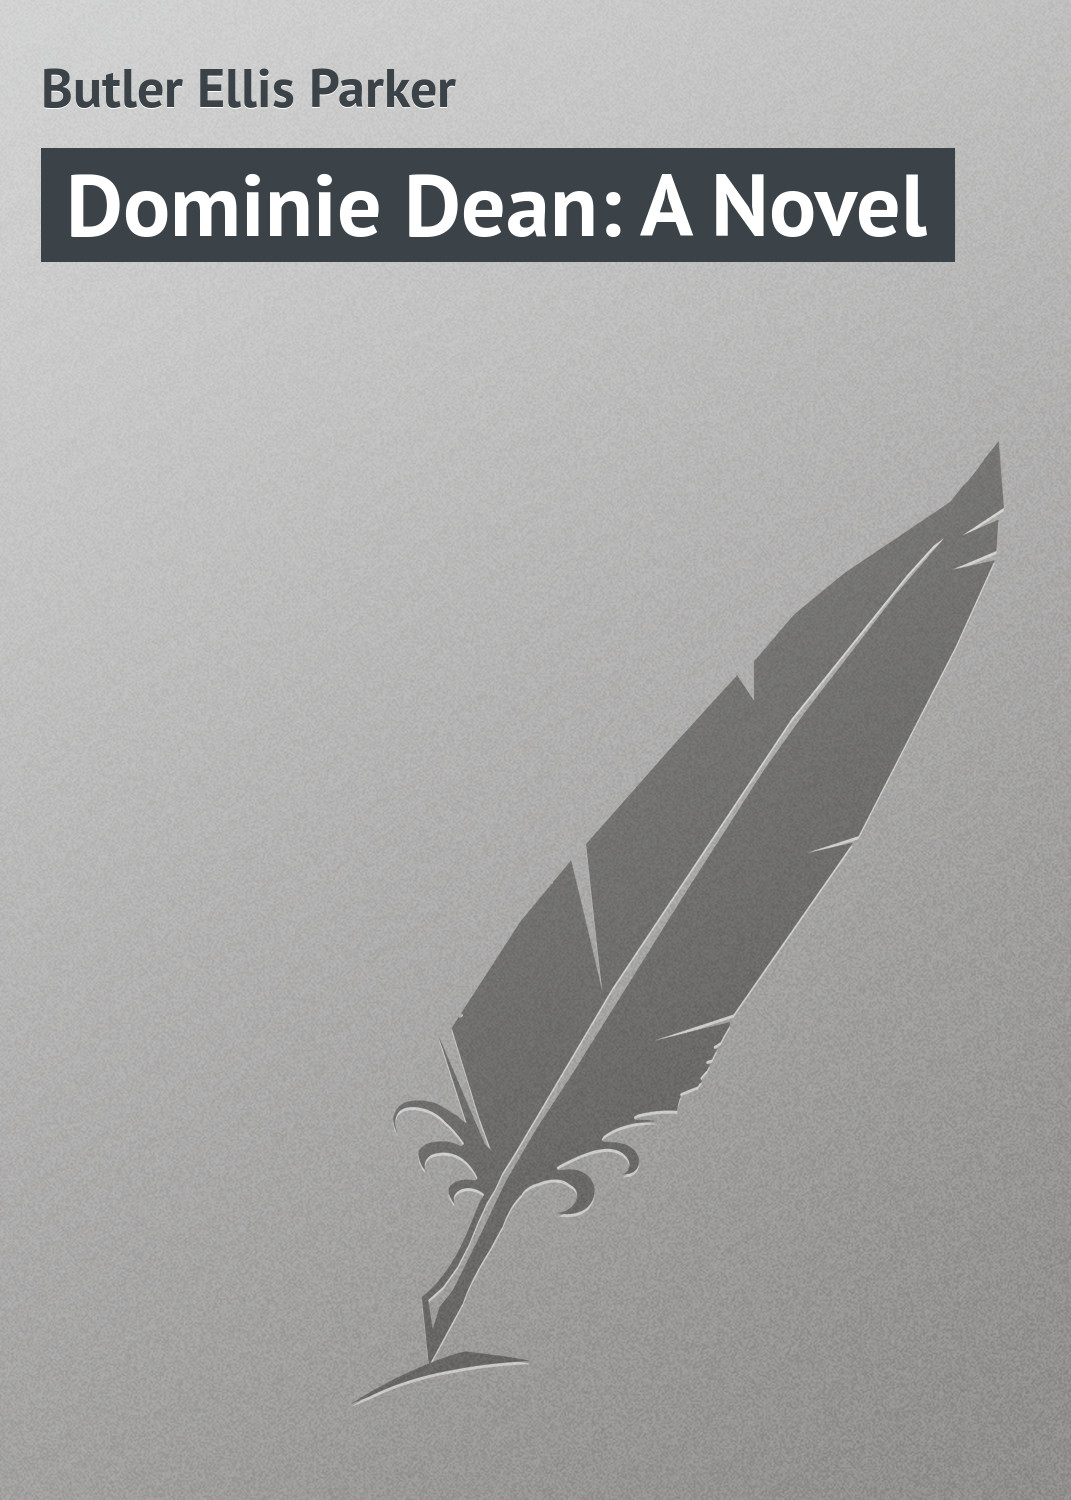 Книга Dominie Dean: A Novel из серии , созданная Ellis Butler, может относится к жанру Зарубежная классика. Стоимость электронной книги Dominie Dean: A Novel с идентификатором 23165523 составляет 5.99 руб.